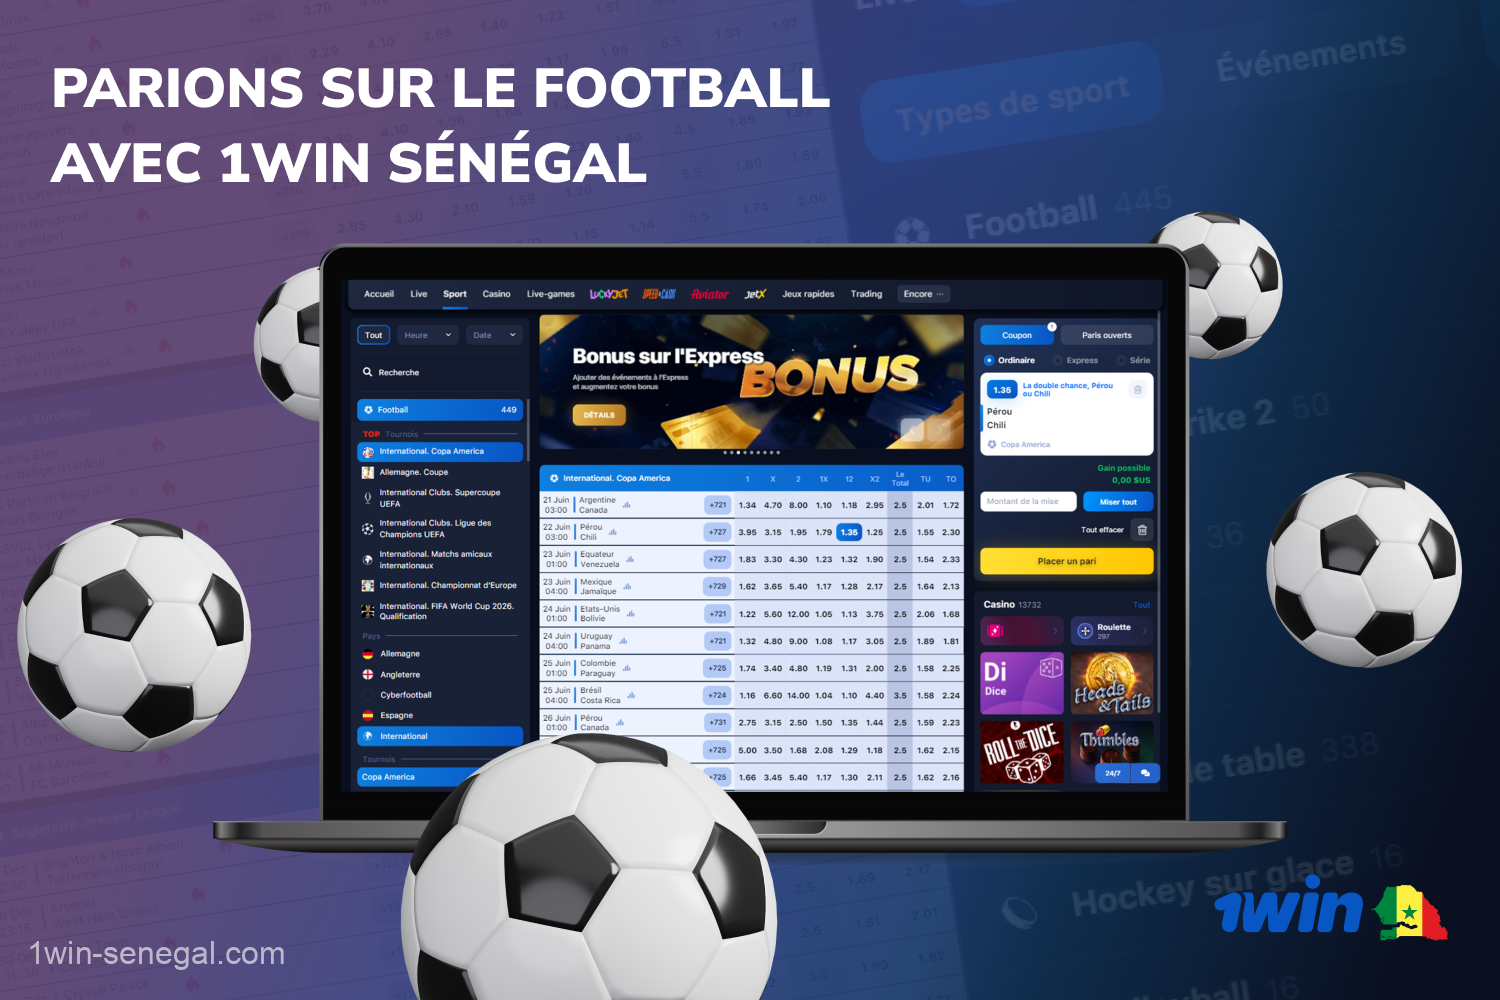 1win offre des options complètes de paris sur le football qui sont populaires parmi les utilisateurs sénégalais